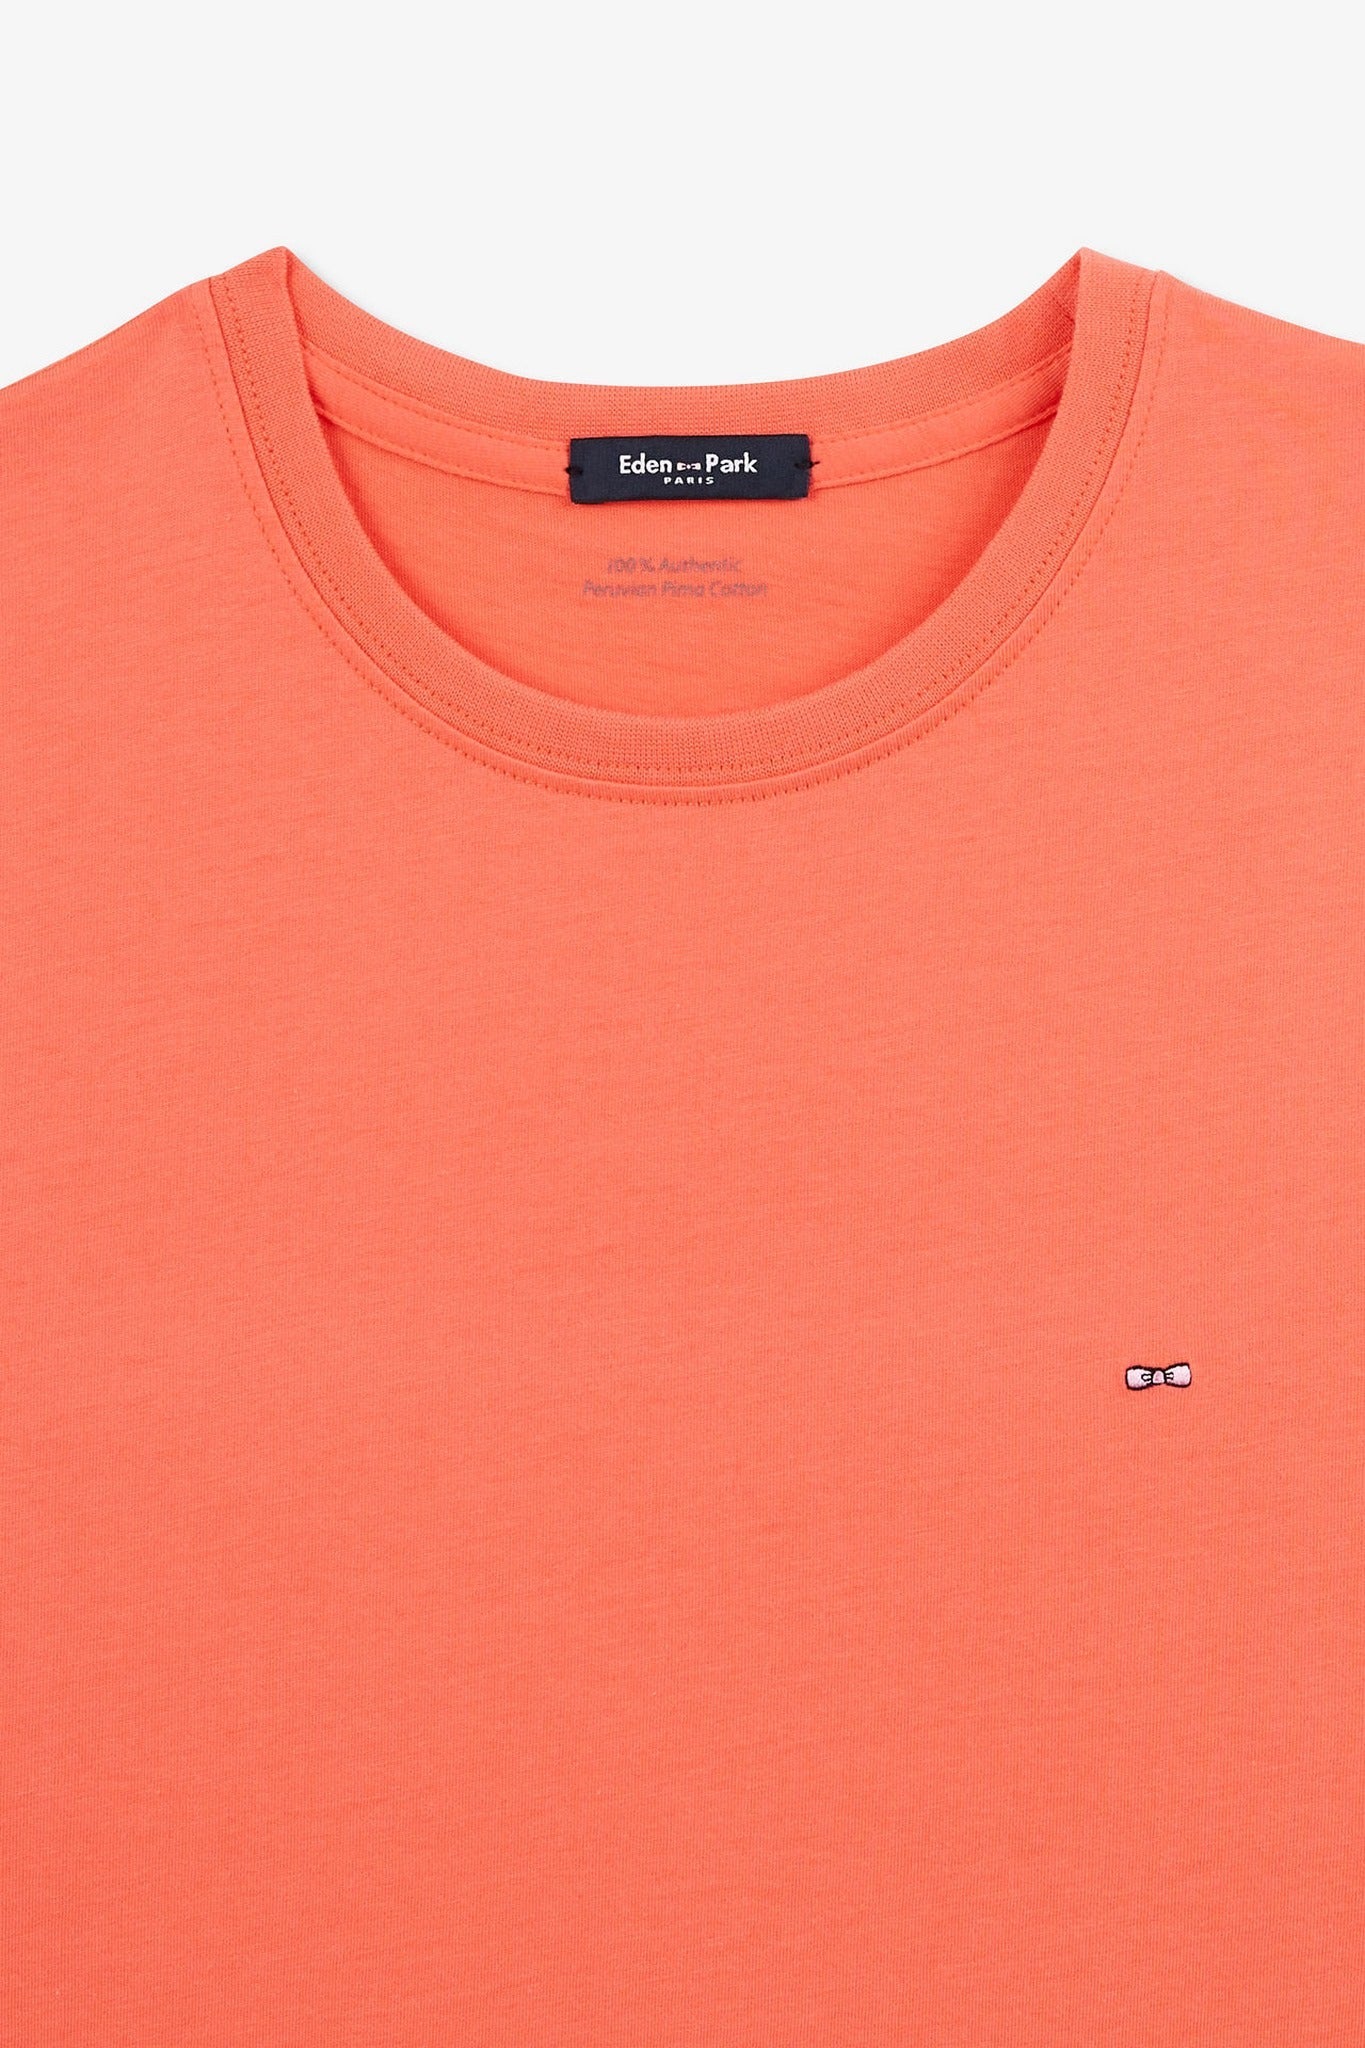 T-shirt rose saumon à manches courtes - Image 7